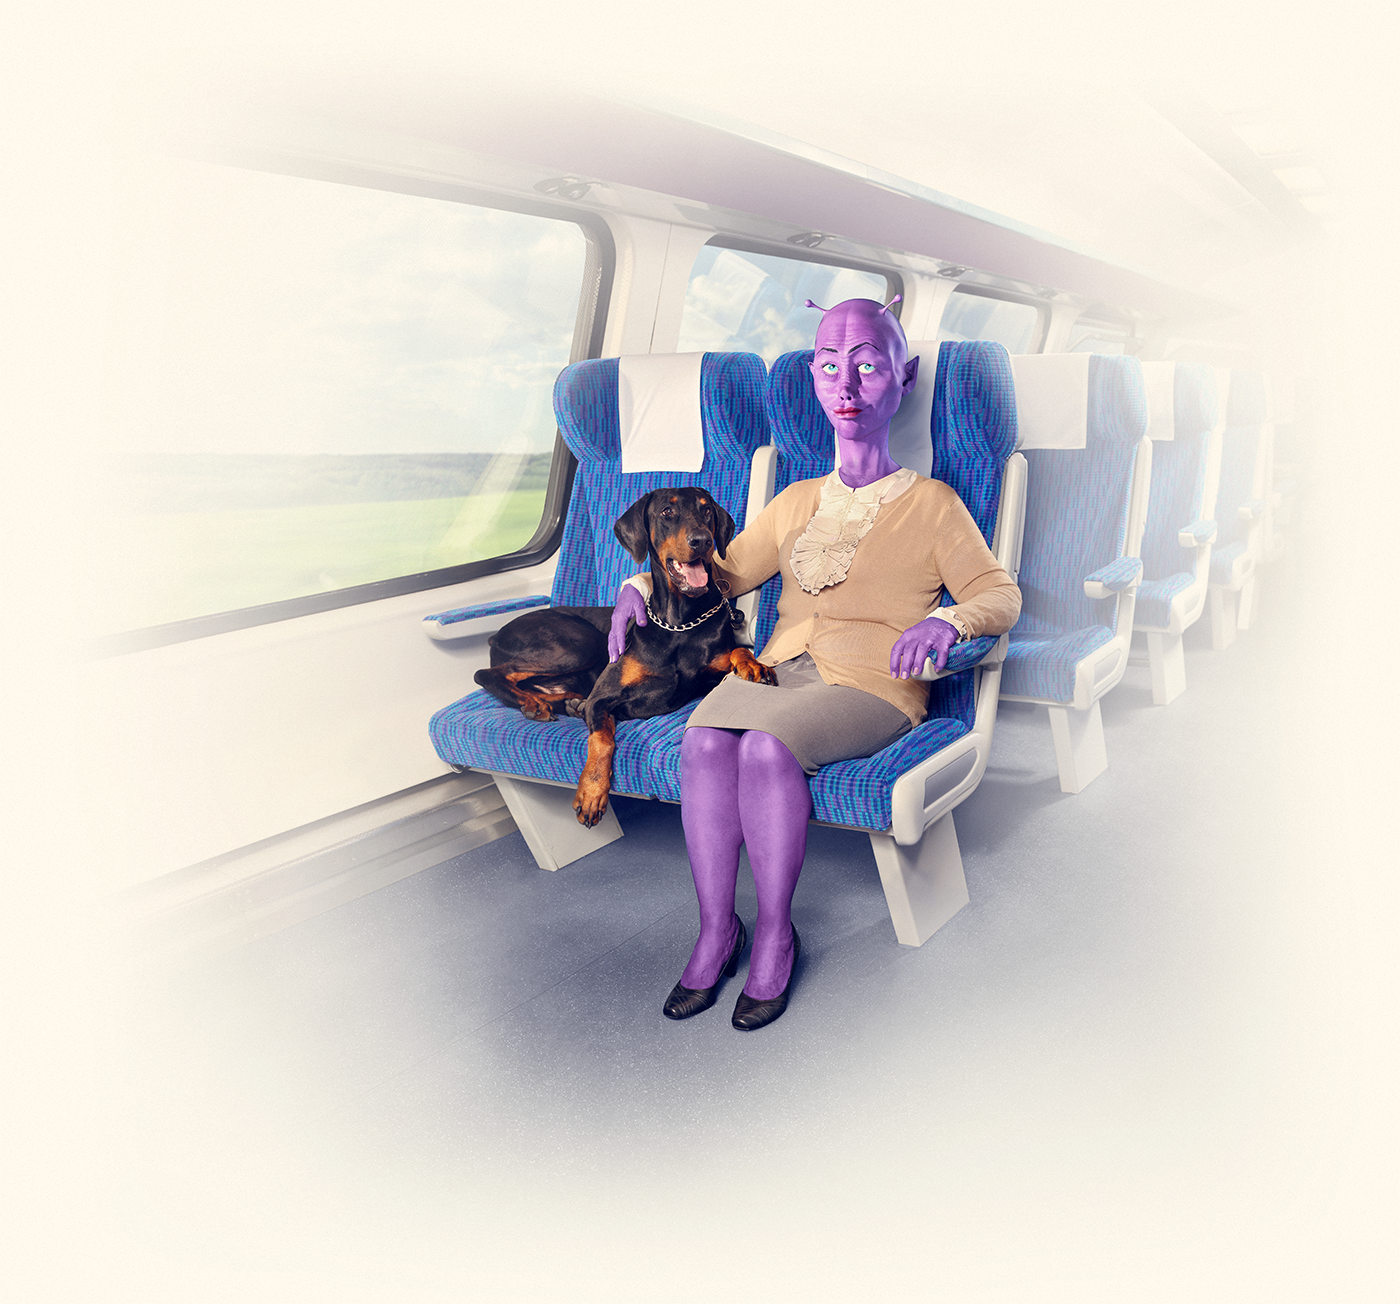 aliens trains transportation campaign Behavior people seat martians rails public colors